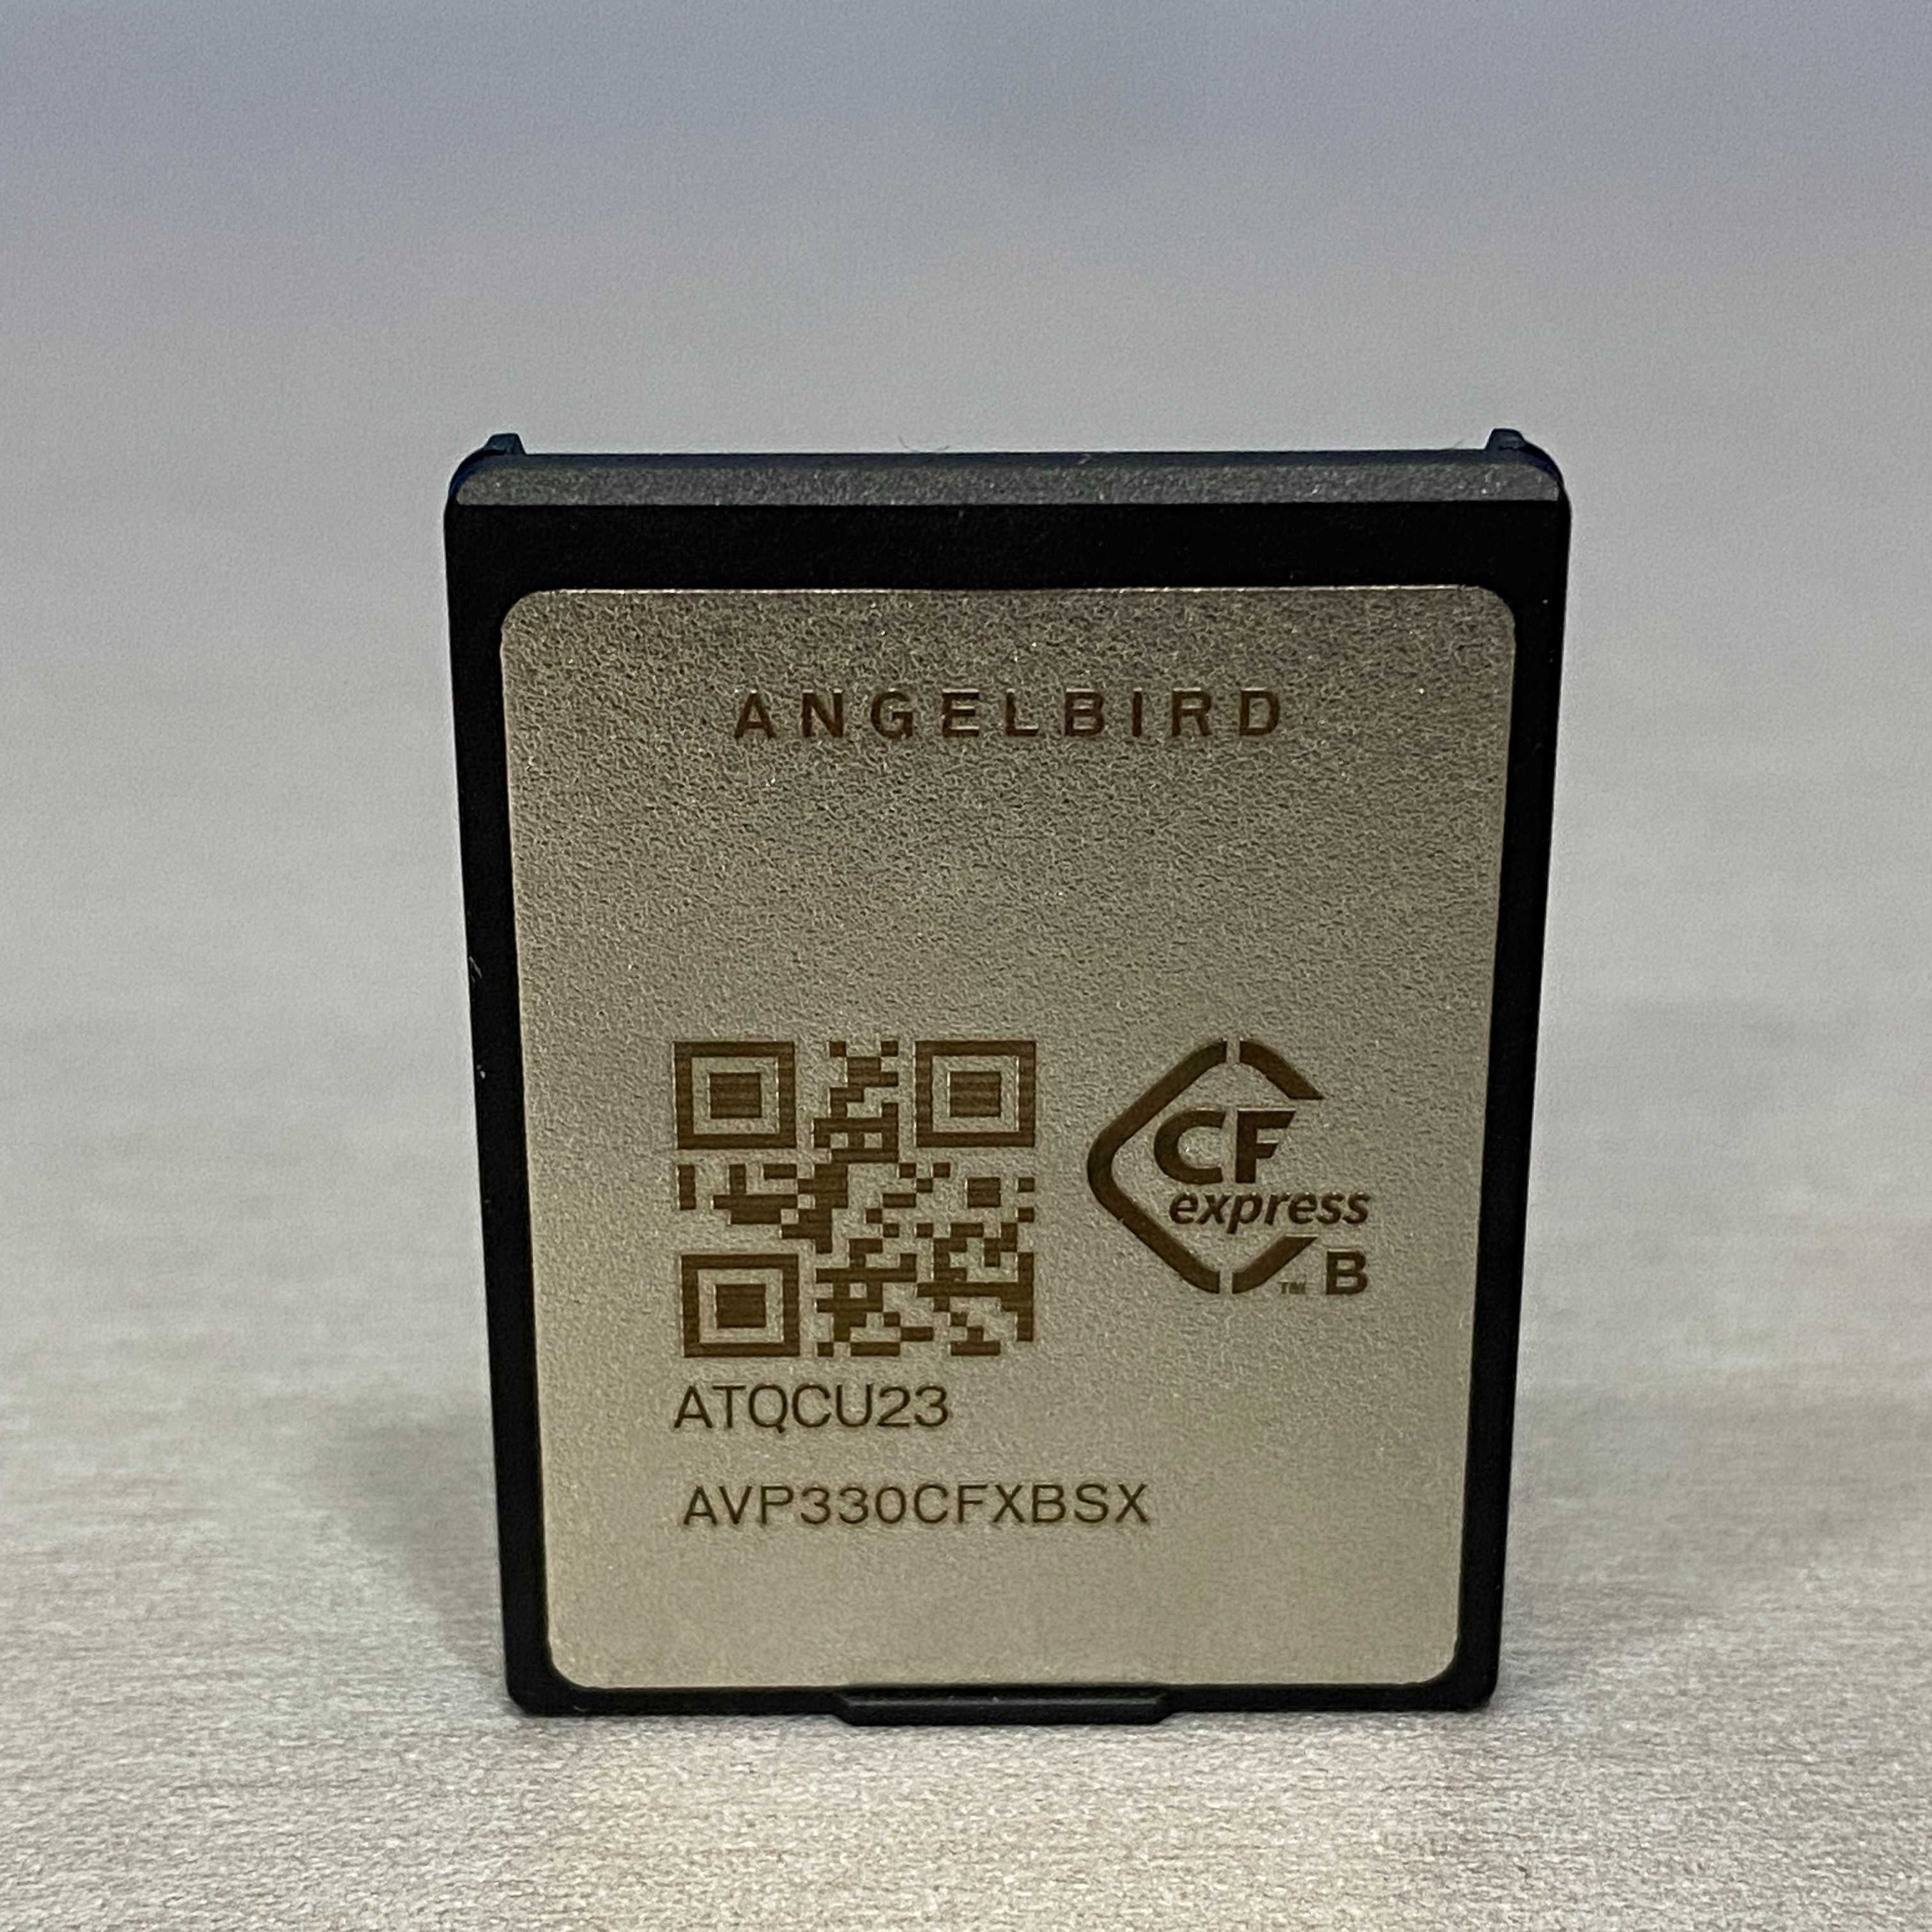 Angelbird AV PRO CFexpress 2.0 SX Type B 330GB